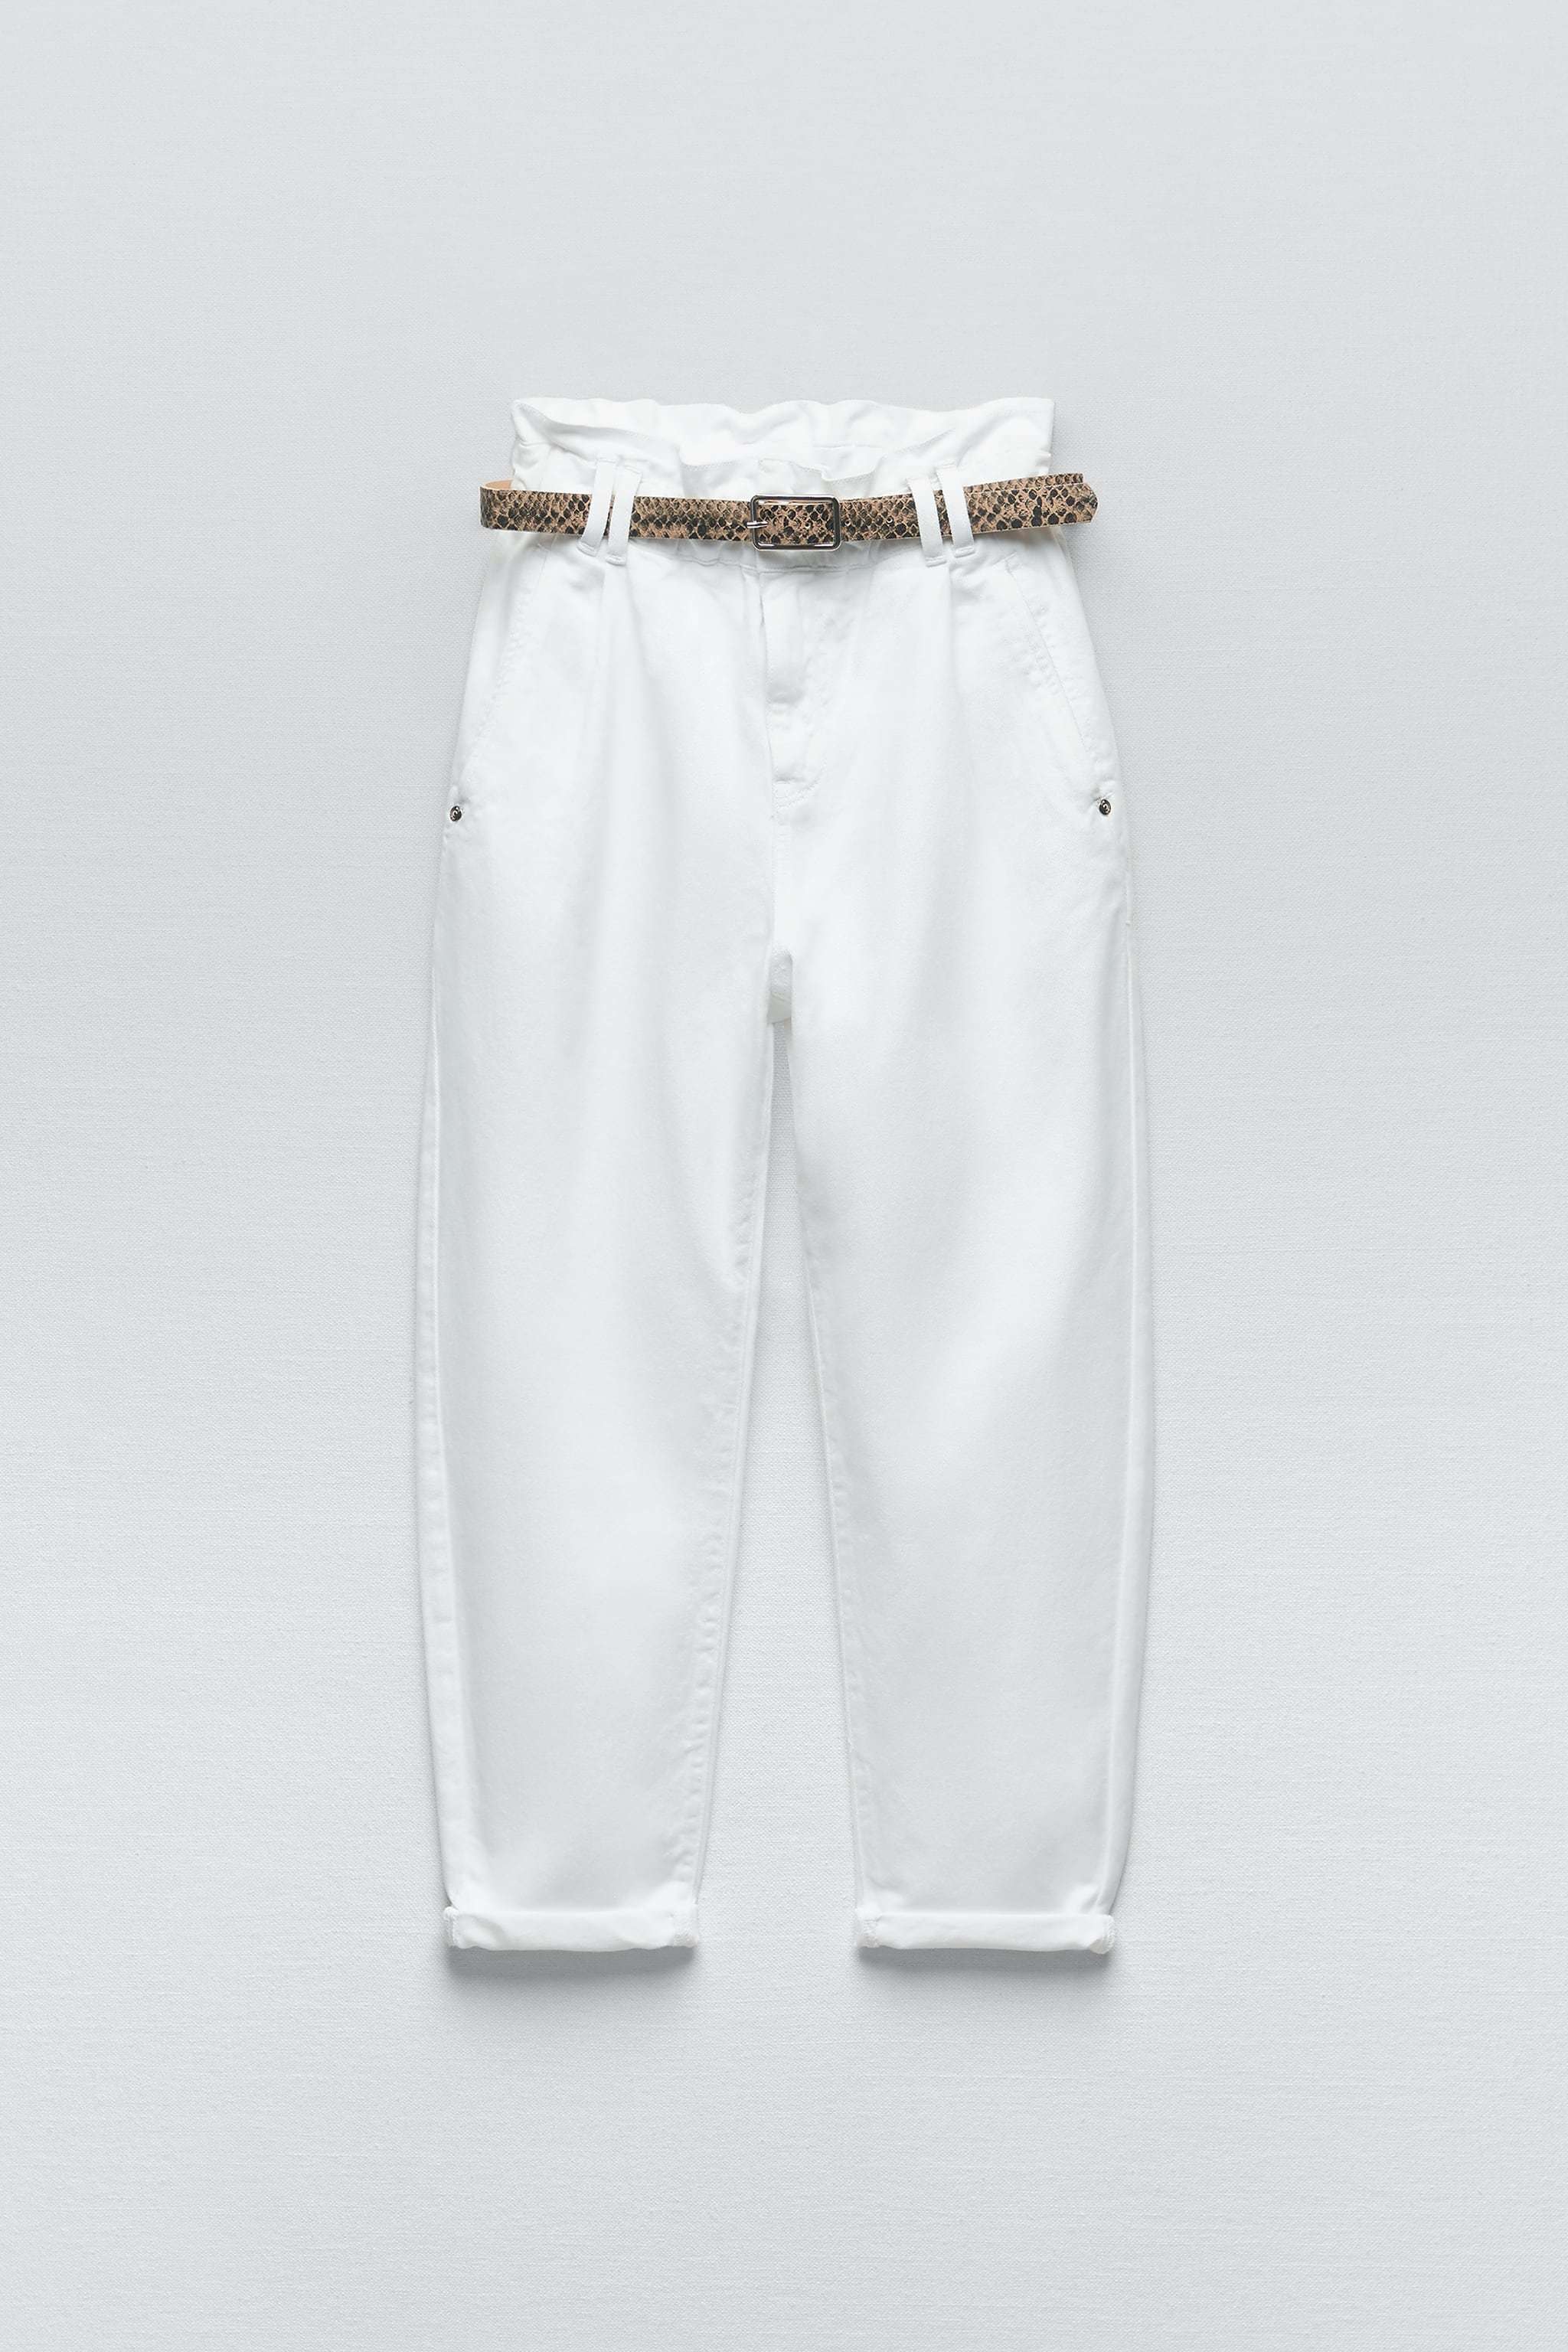 Pantalón blanco con vuelta de Zara (9,99 euros).